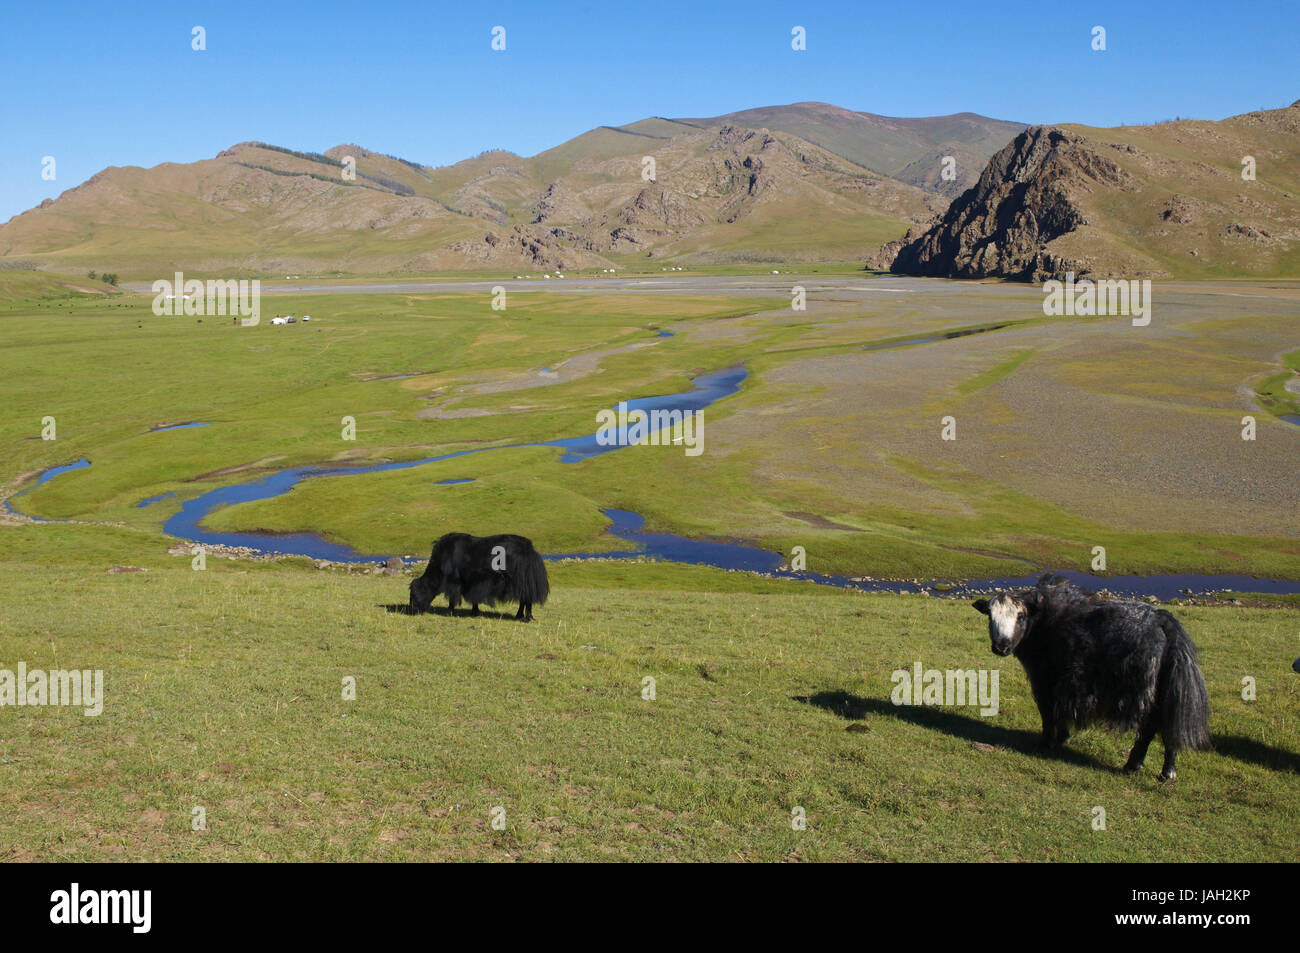 La Mongolie, l'Asie centrale,province historique Övörkhangaï,vallée de l'Orkhon,UNESCO World Heritage,steppe mongole,yak, Banque D'Images